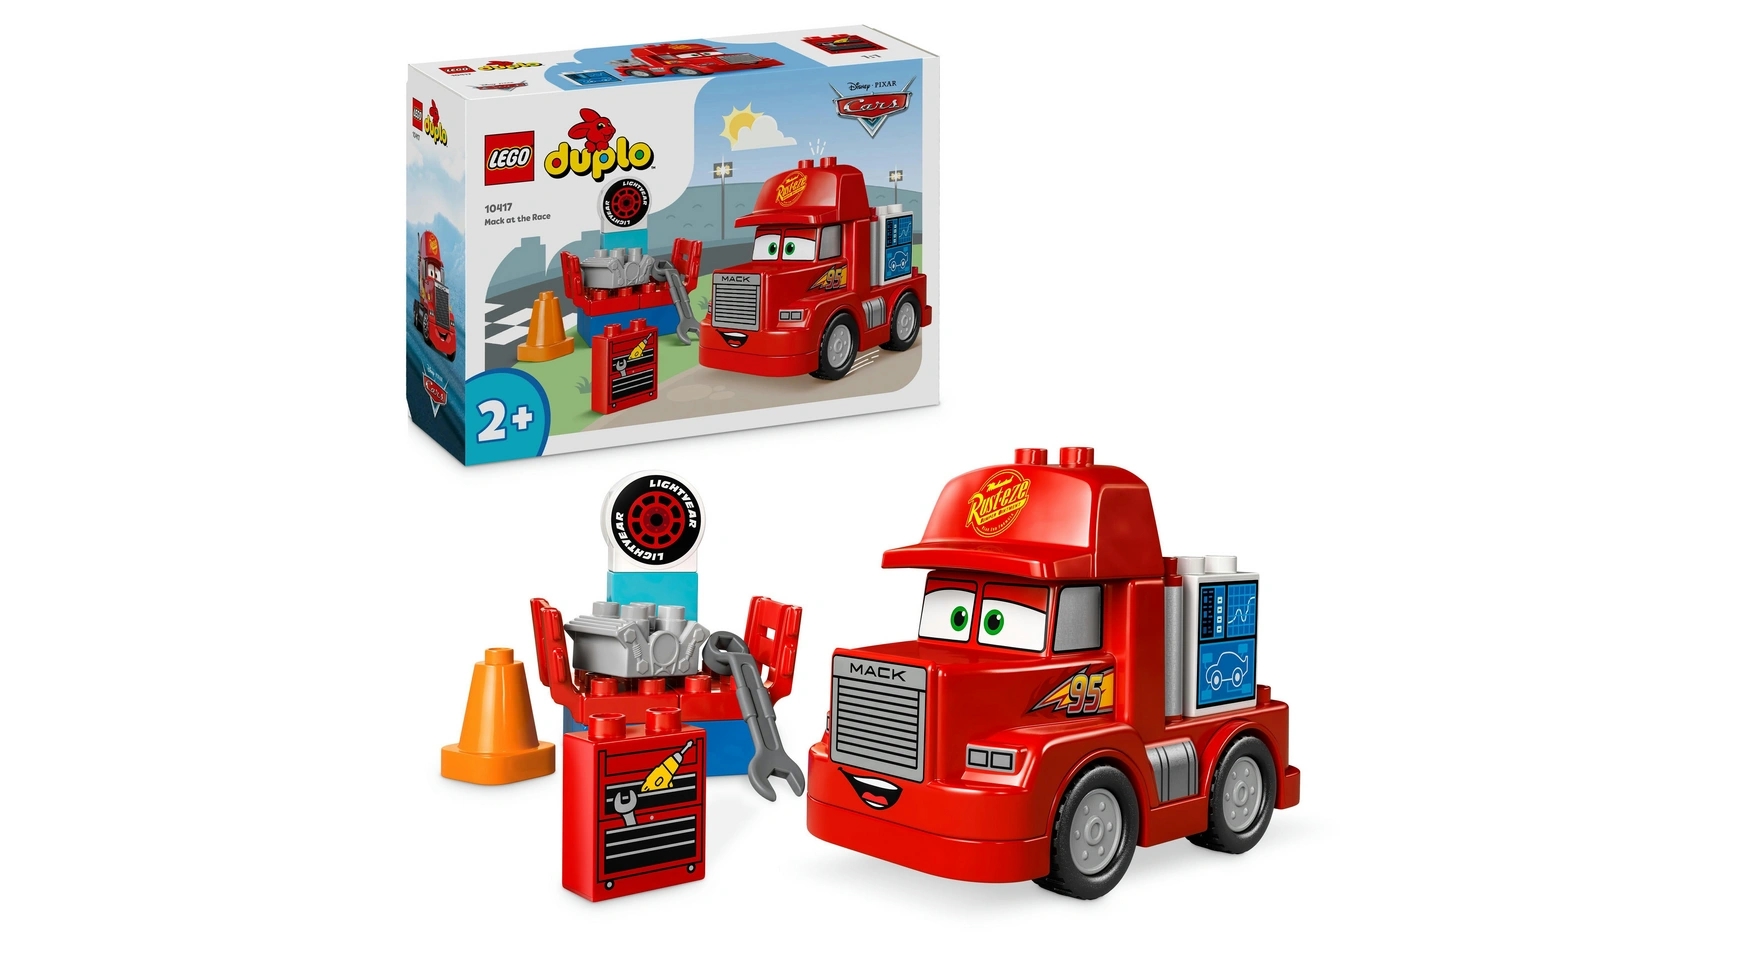 Lego DUPLO Гоночный грузовик Mack от Disney и Pixar Cars машинка из м ф тачки 2 1 55 disney pixar